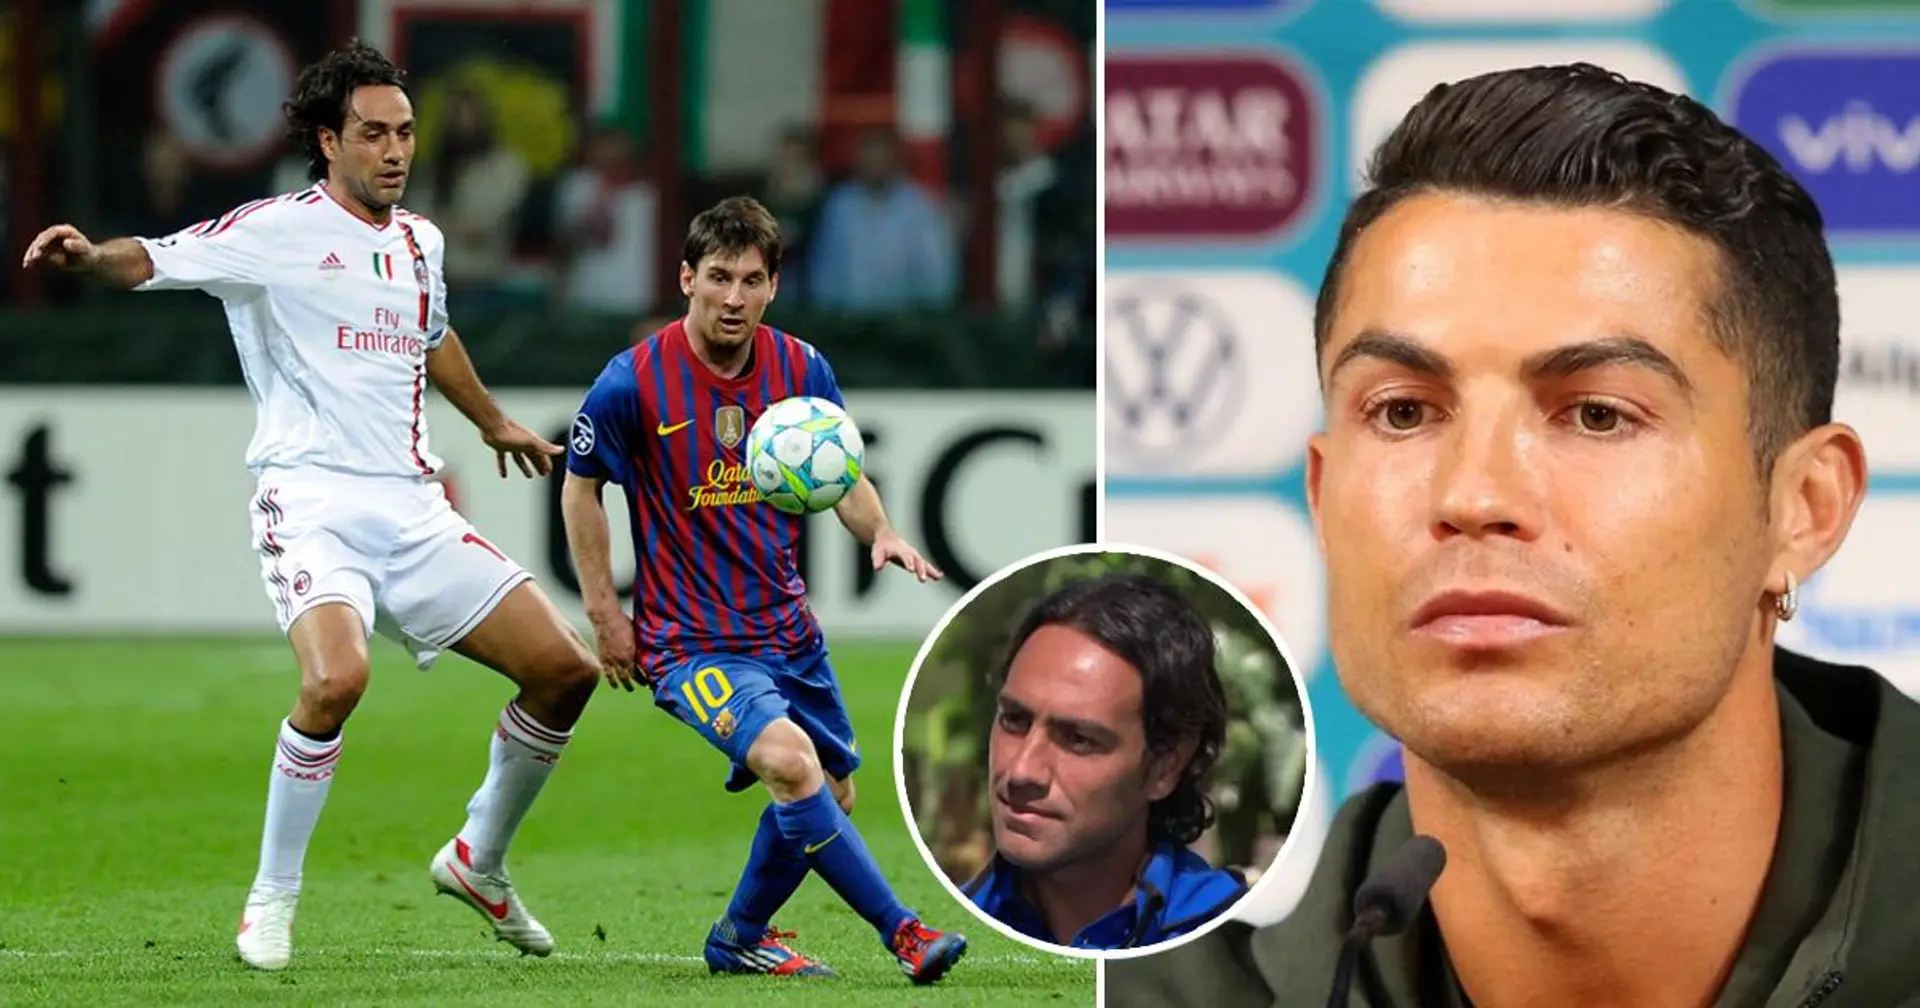 'Mentalmente me destrozó': Nesta recuerda una anécdota por la que teme más a Messi que a Cristiano